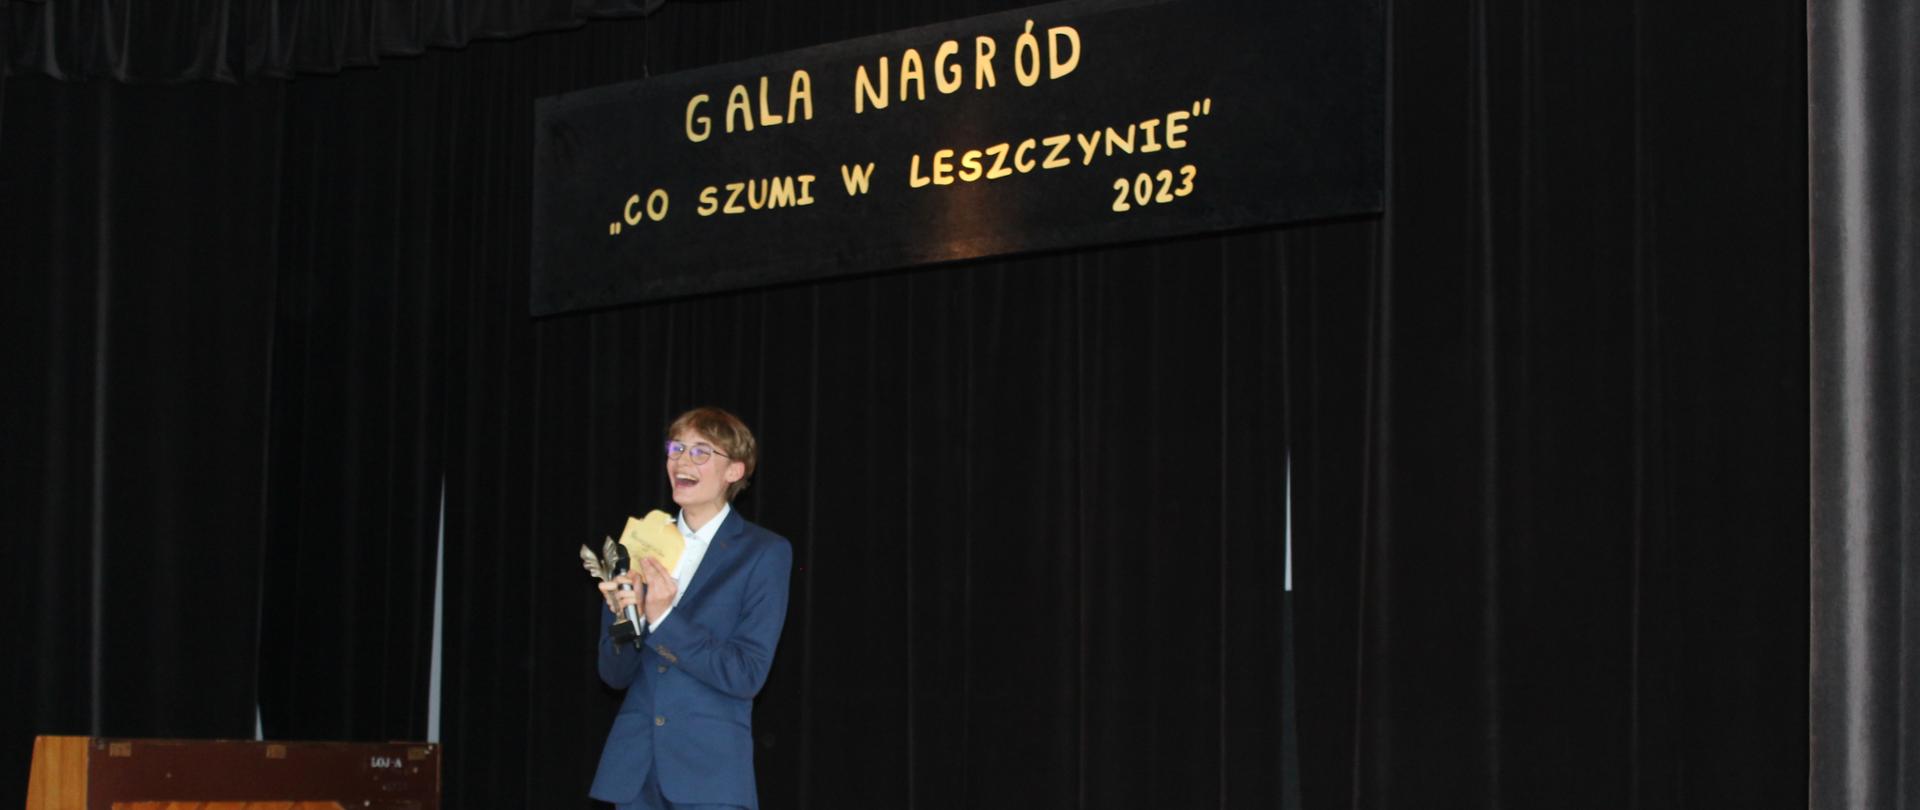 Organizator Gali Nagród „Co Szumi W Leszczynie” 2023 - Adam Bugno